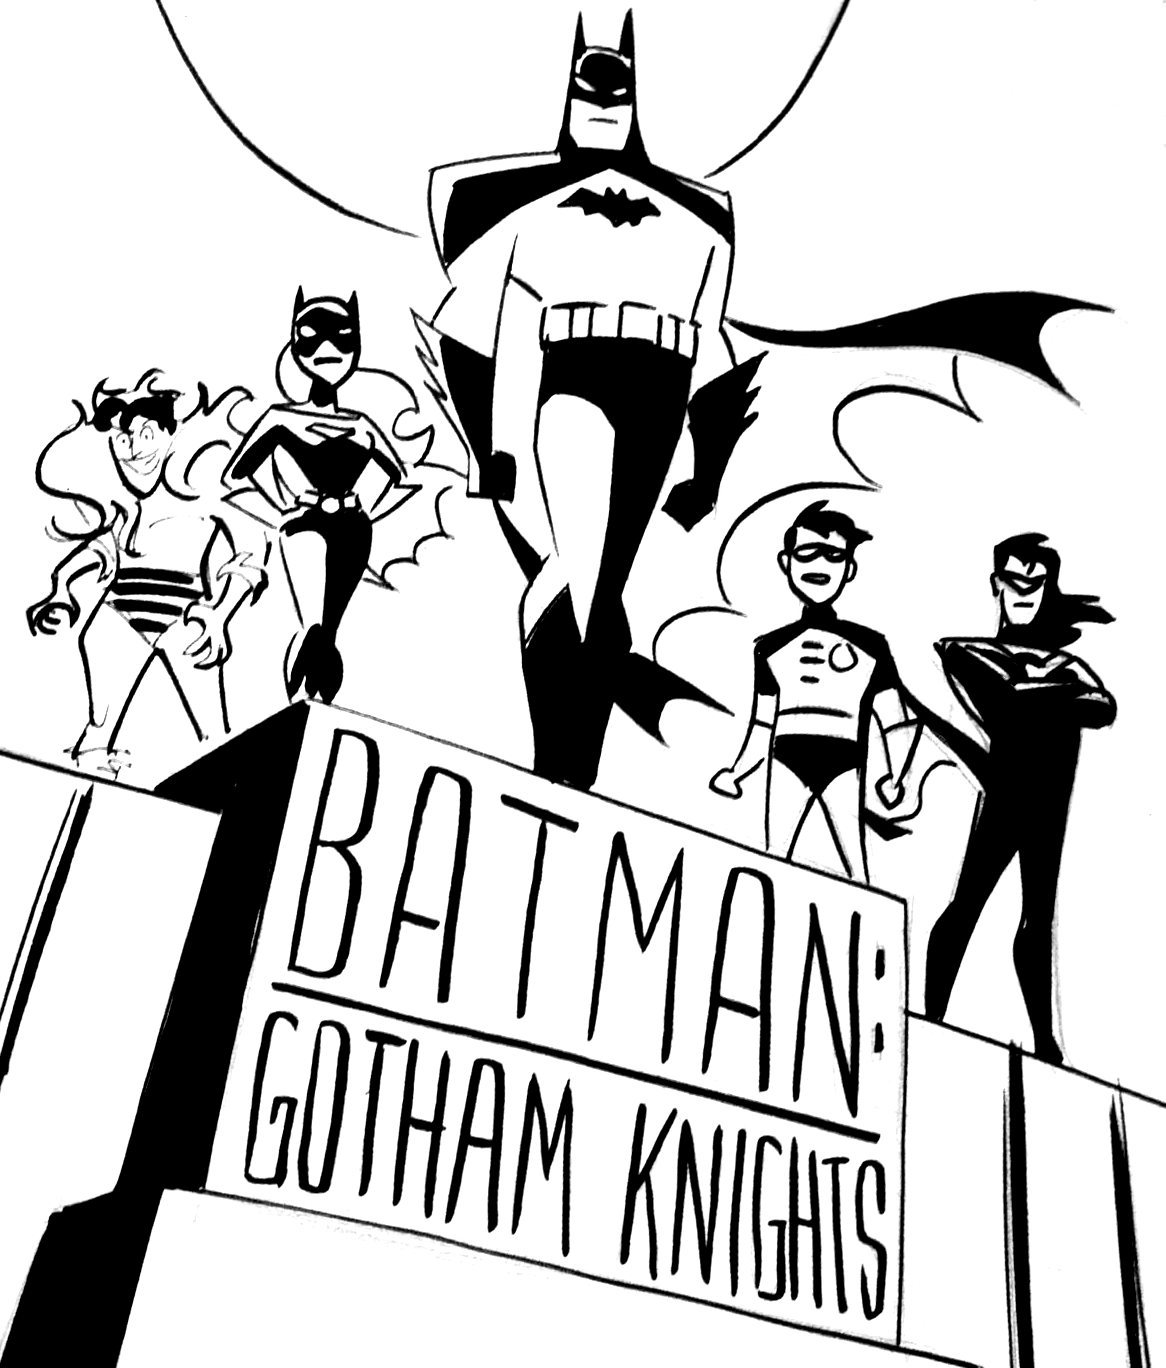 download the new batman adventures batman